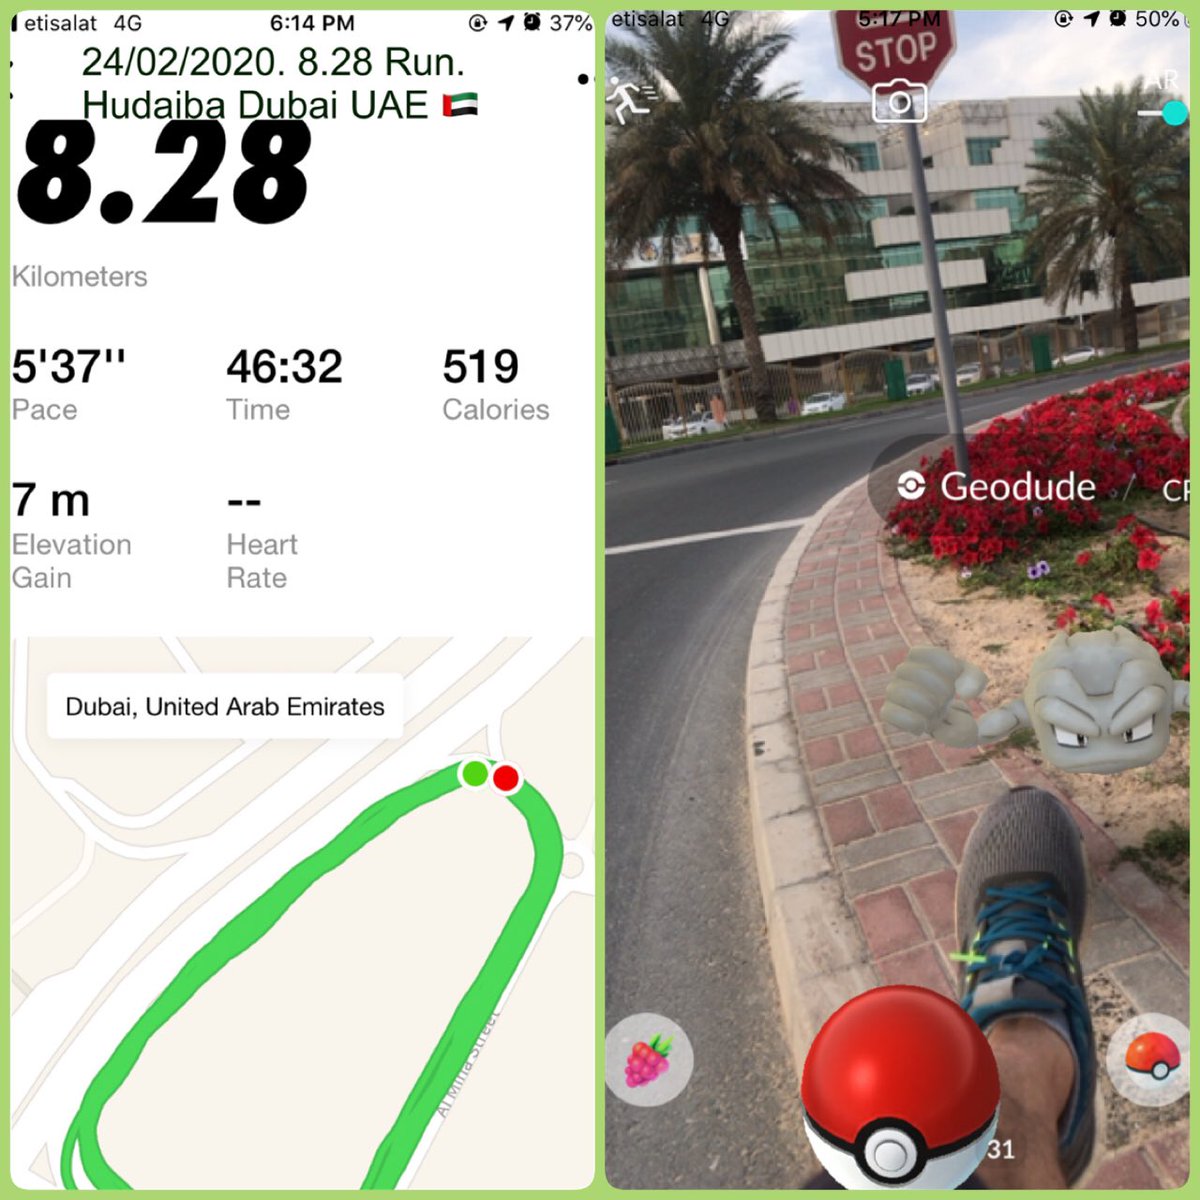 24/02/2020. 8.28 Run. Hudaiba Dubai UAE 🇦🇪. Temperature 27c. 
#Running #RunningWithTumiSole ##RunningMan #Dubai #adidas #PokemonGO #RUNNINGMANinMNL #RunWithUs #DubaiRunners #run #RunForYourWife #RunWithUs #life #COVID19 @debrakato @DHA_Dubai @MissCitronela